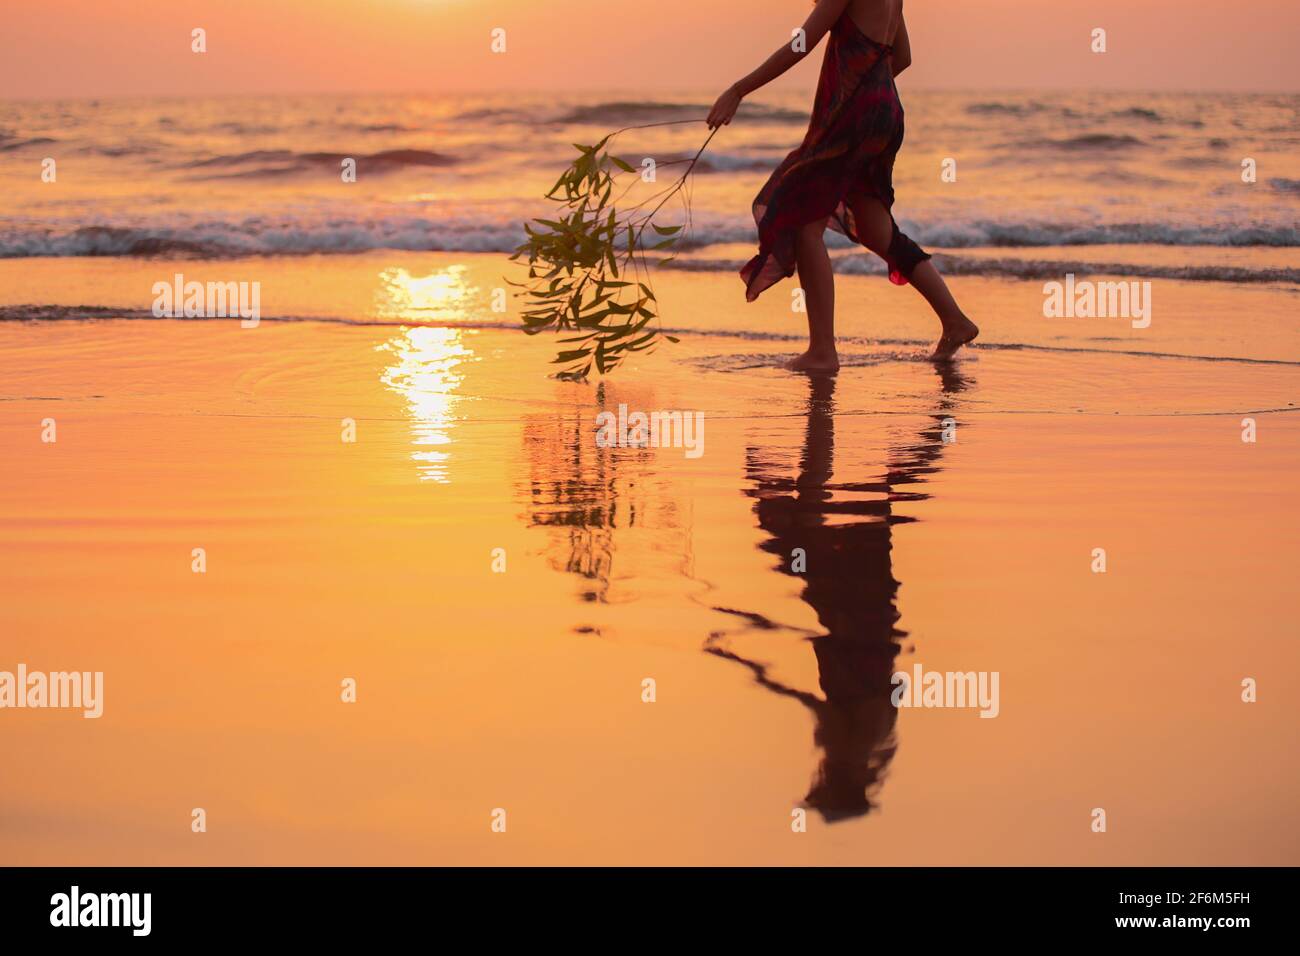 Frau Silhouette beobachten einen schönen Sonnenuntergang am Strand glücklich Sommerkonzept Stockfoto